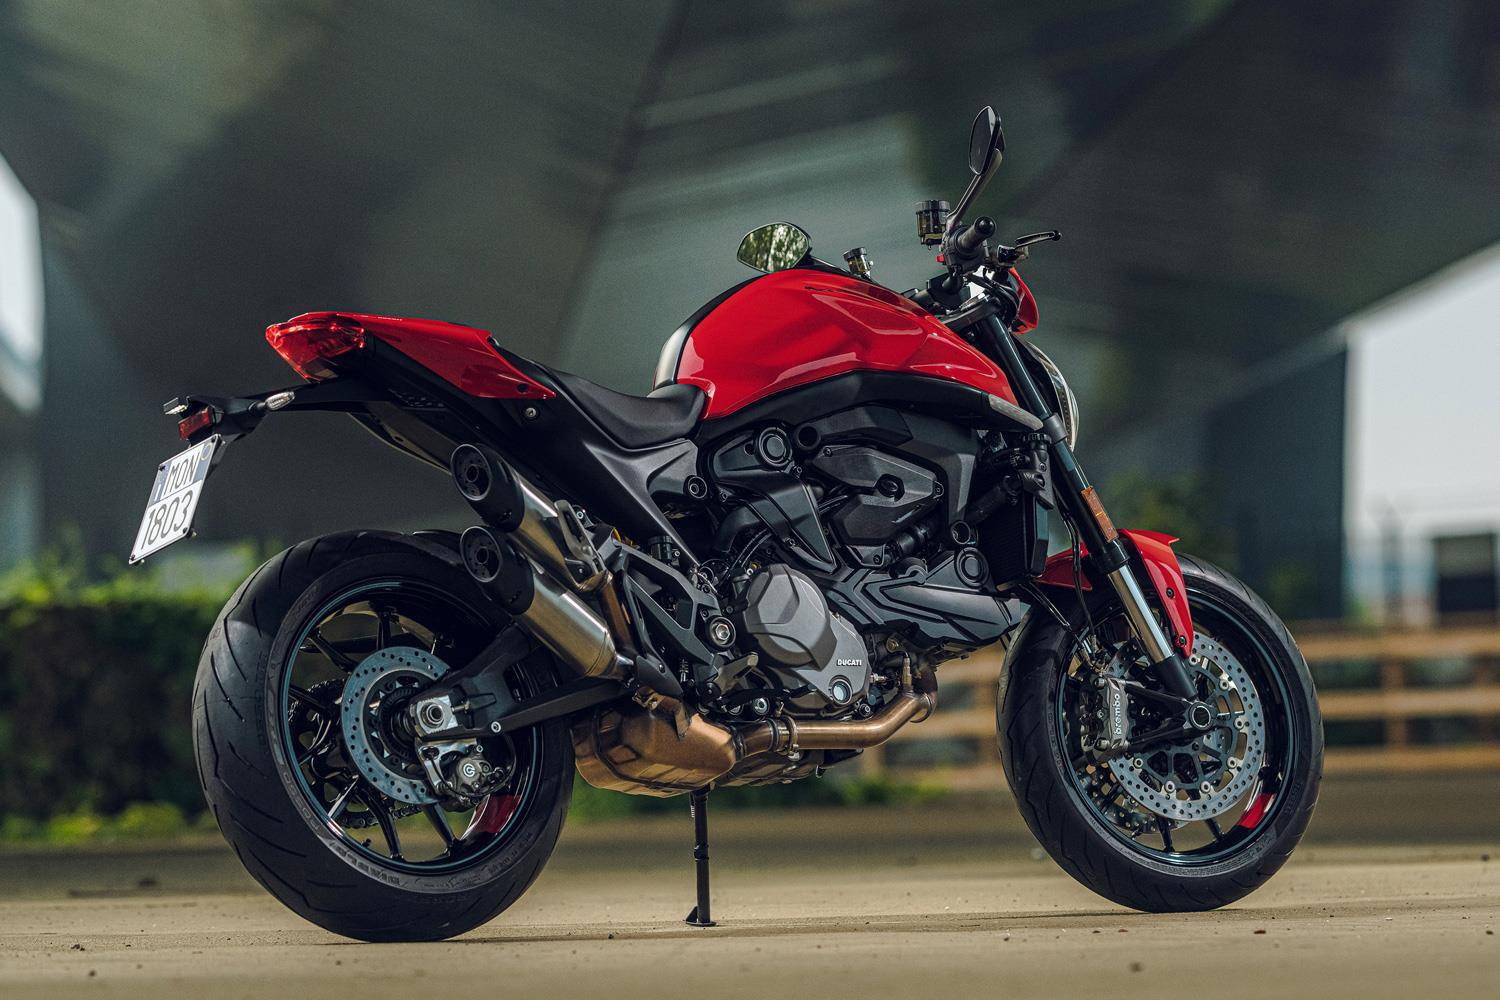 Обзор и тест-драйв мотоцикла ducati monster 821 2015